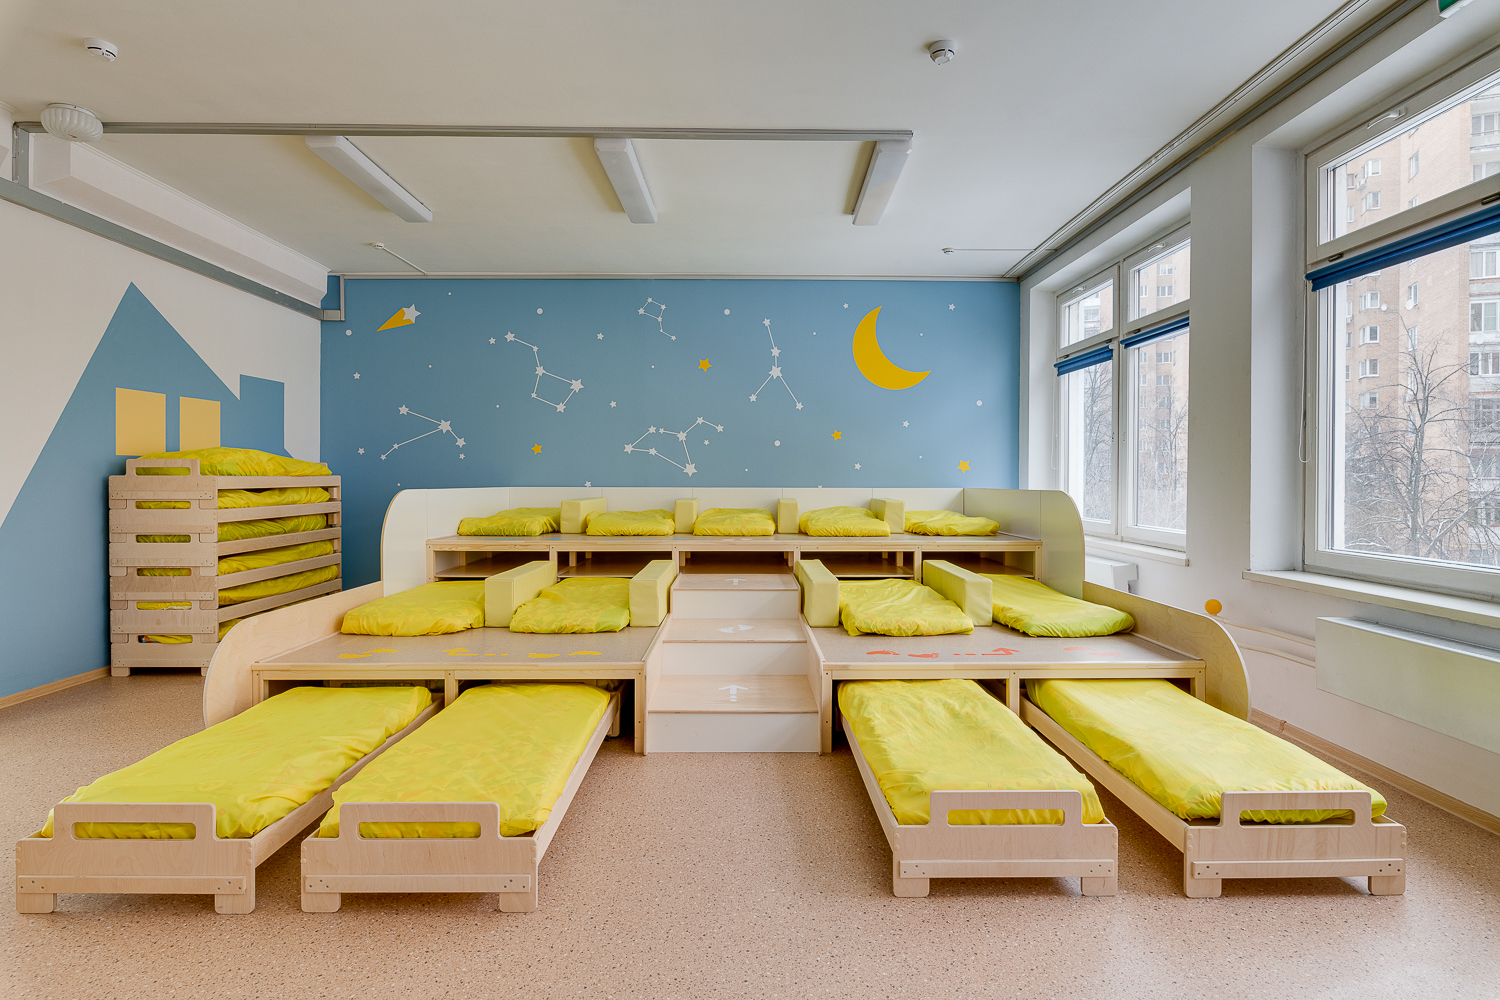 Кровати для детского сада: особенности выбора и расстановки